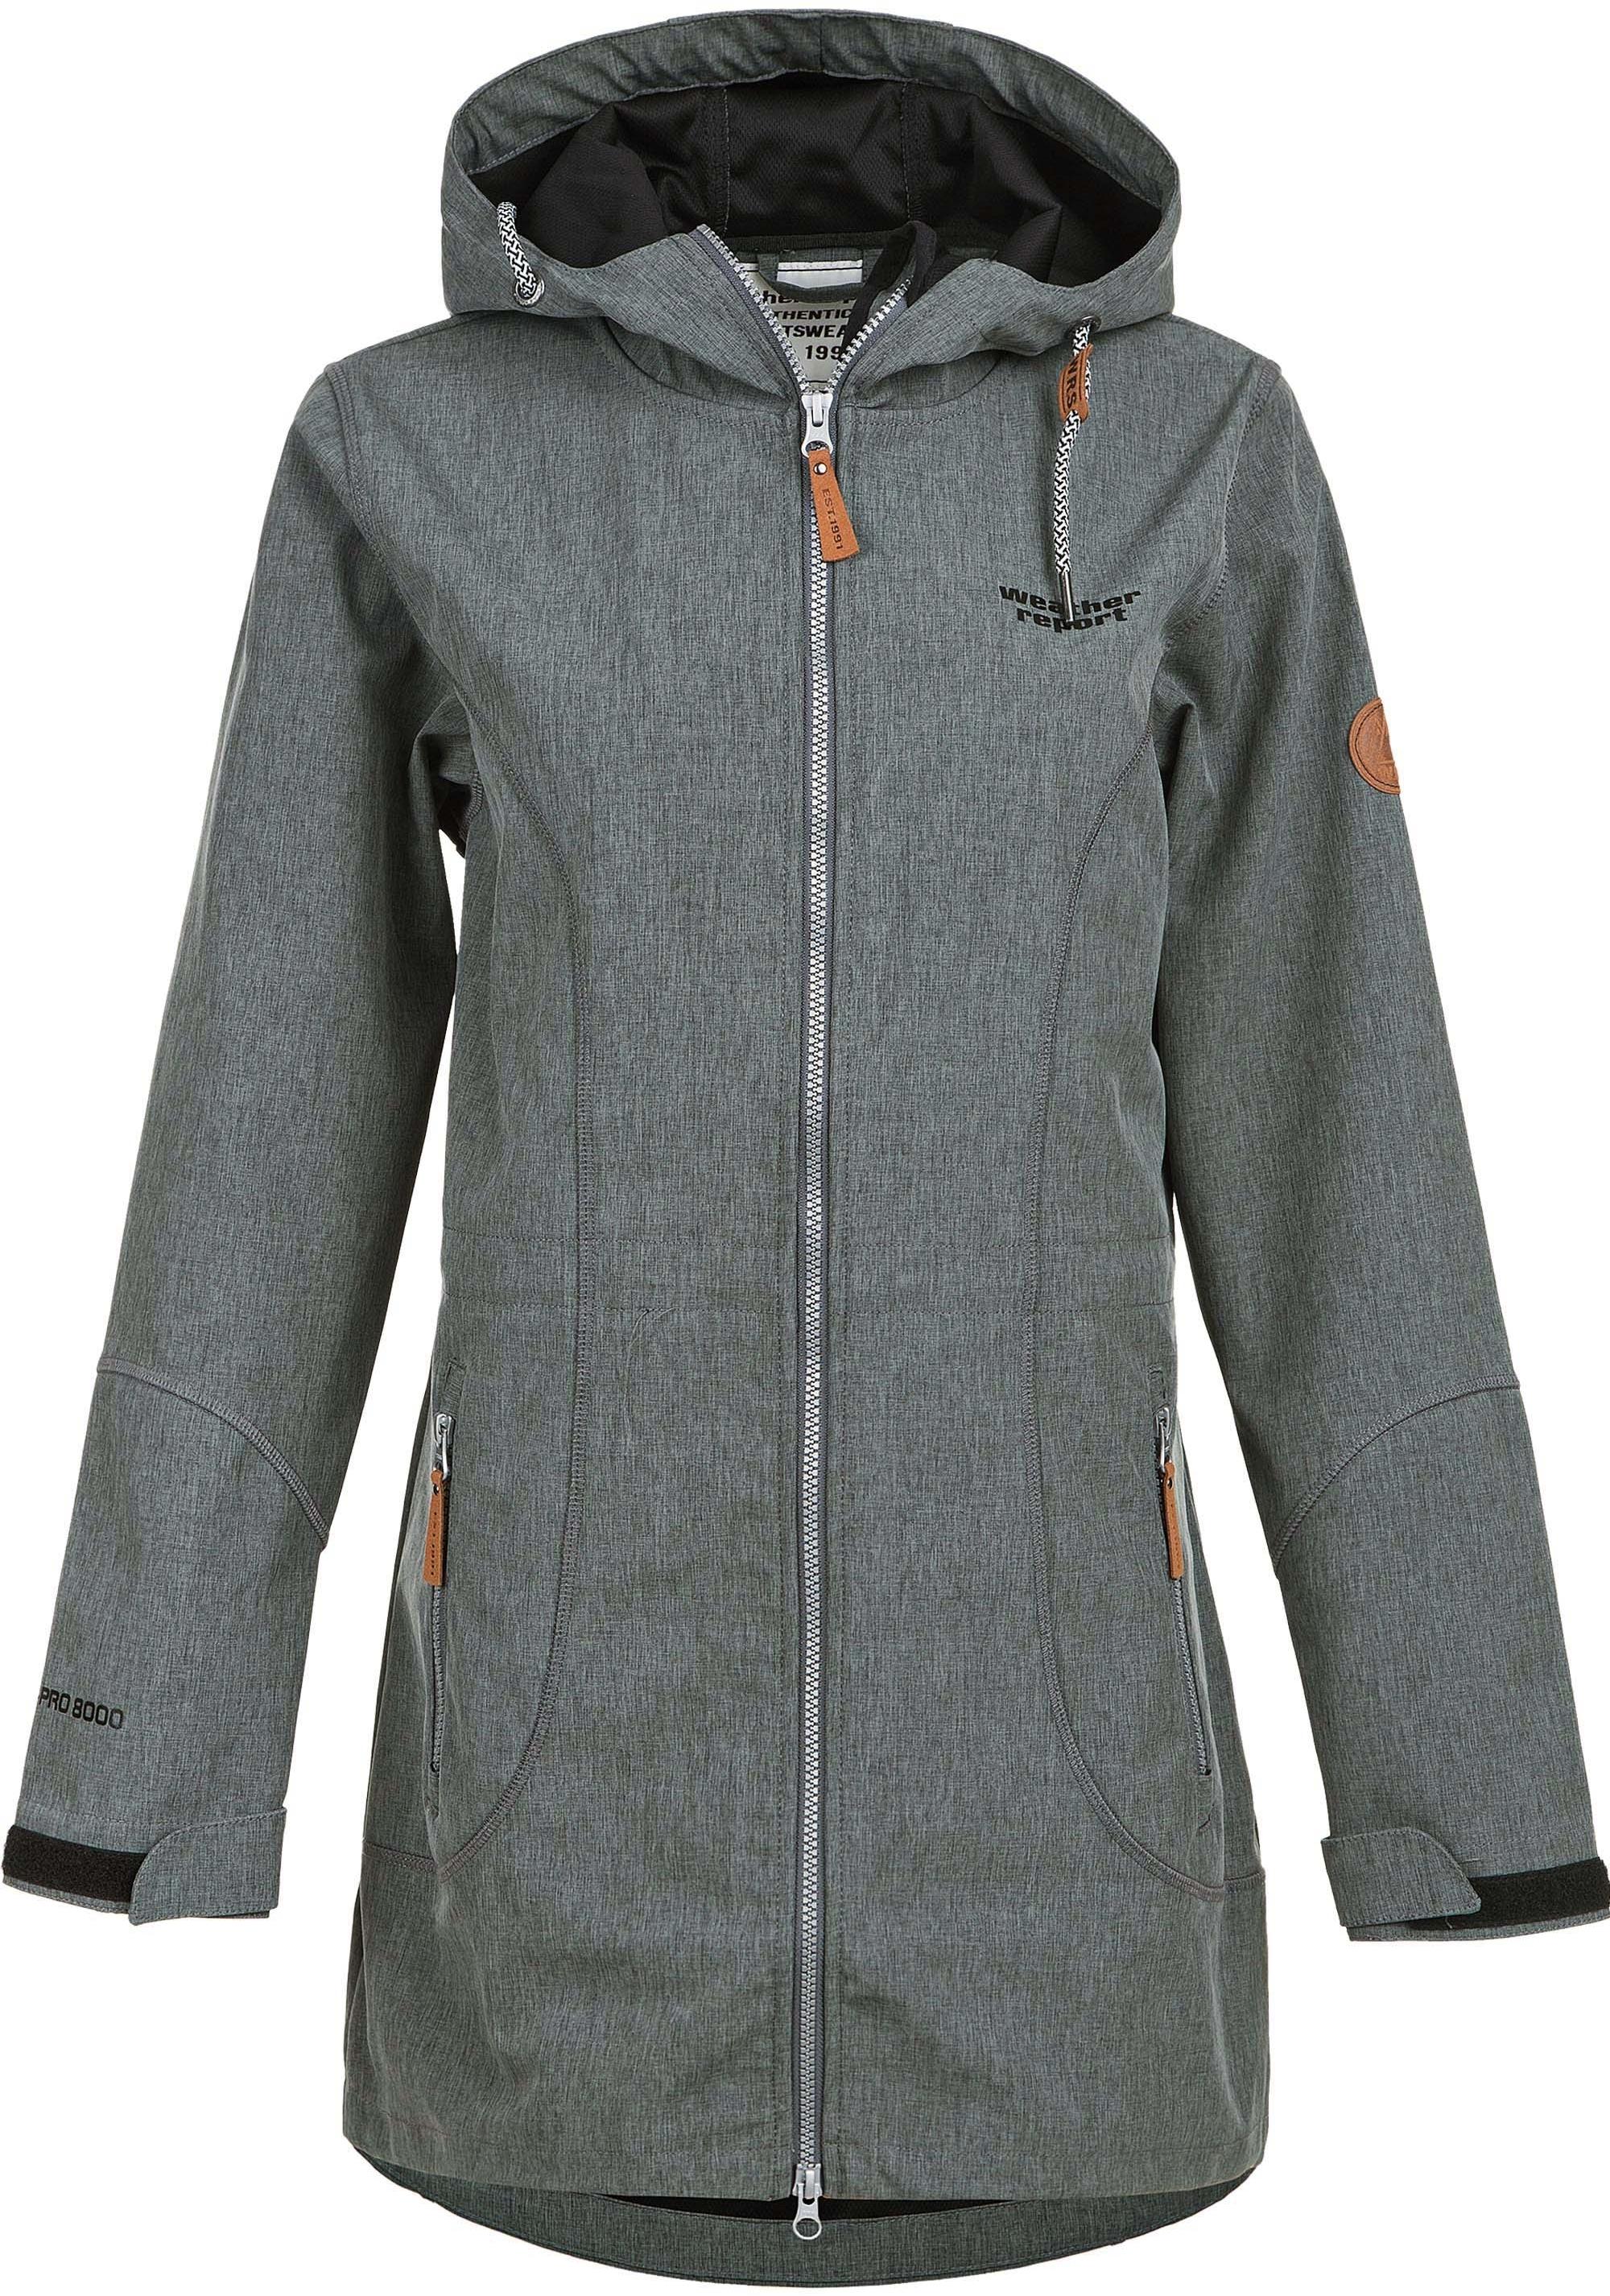 Weather Report LILAN Softshelljacke Damen kaufen 1011 Online Grey von Shop Melange im Dark SportScheck